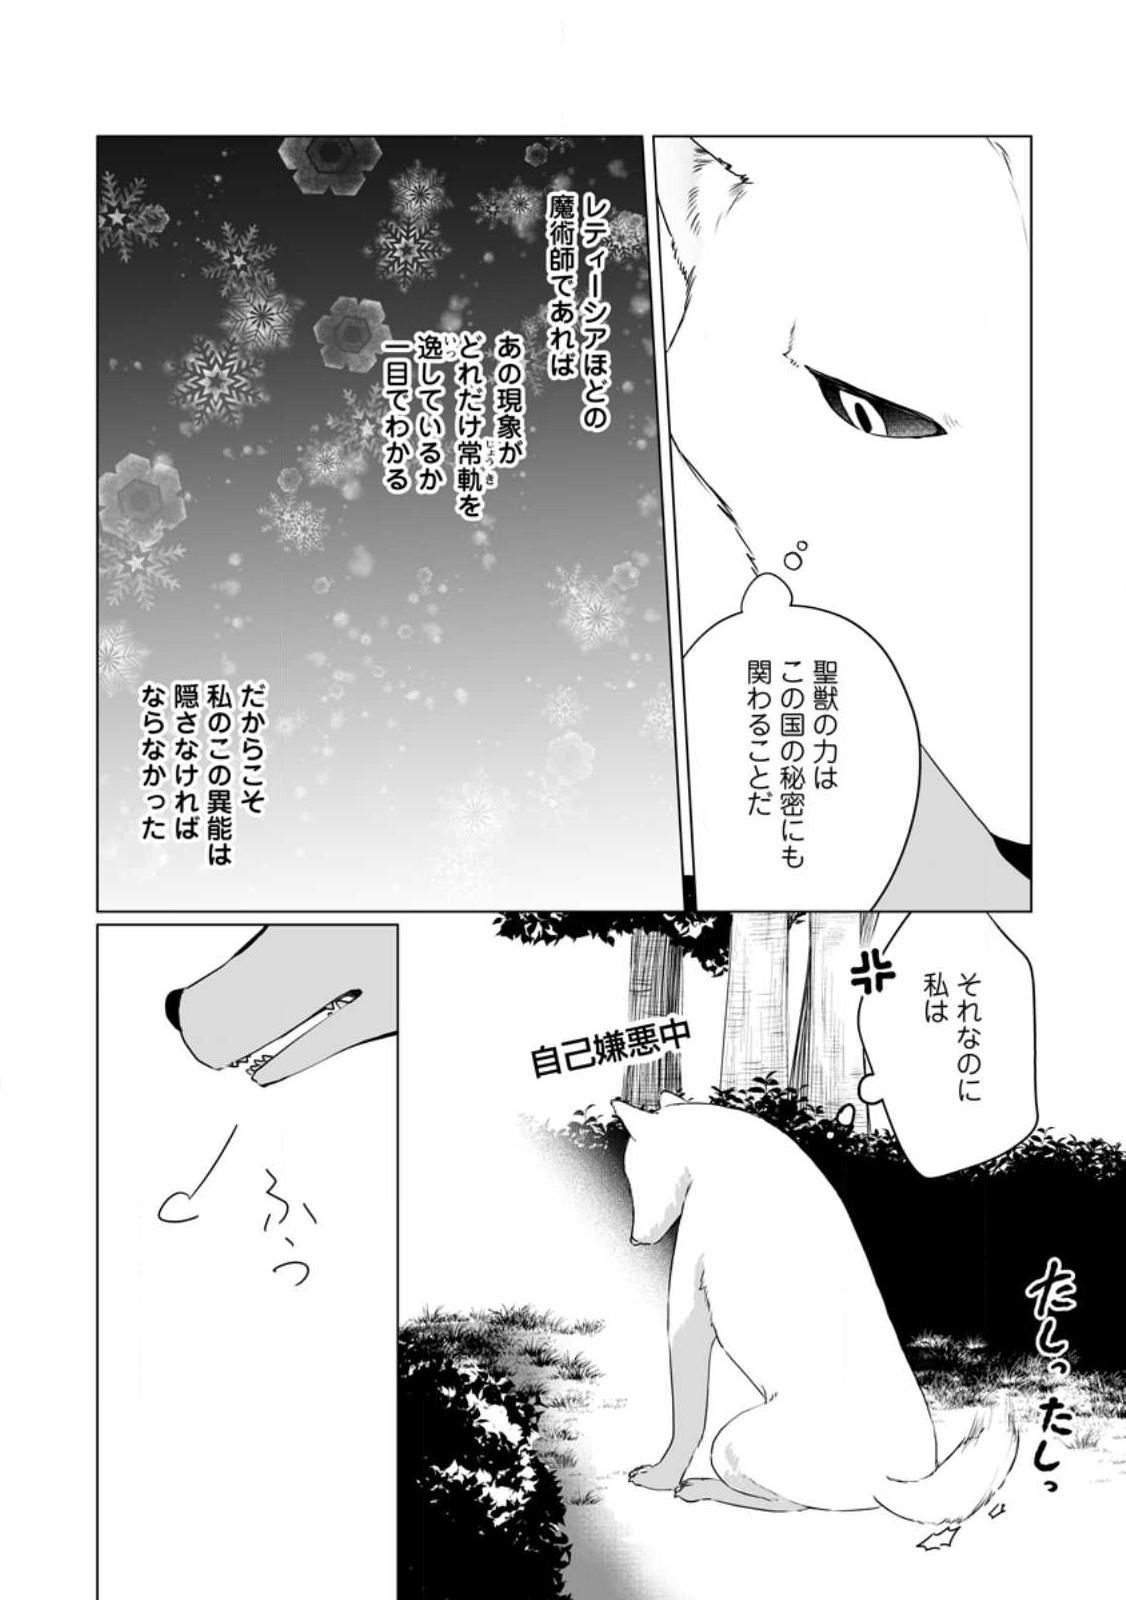 Tenseisaki de Suterareta no de, Mofumofu-tachi to Oryouri shimasu: Okazari Ouhi wa My Pace ni Saikyou desu - Chapter 29.2 - Page 3